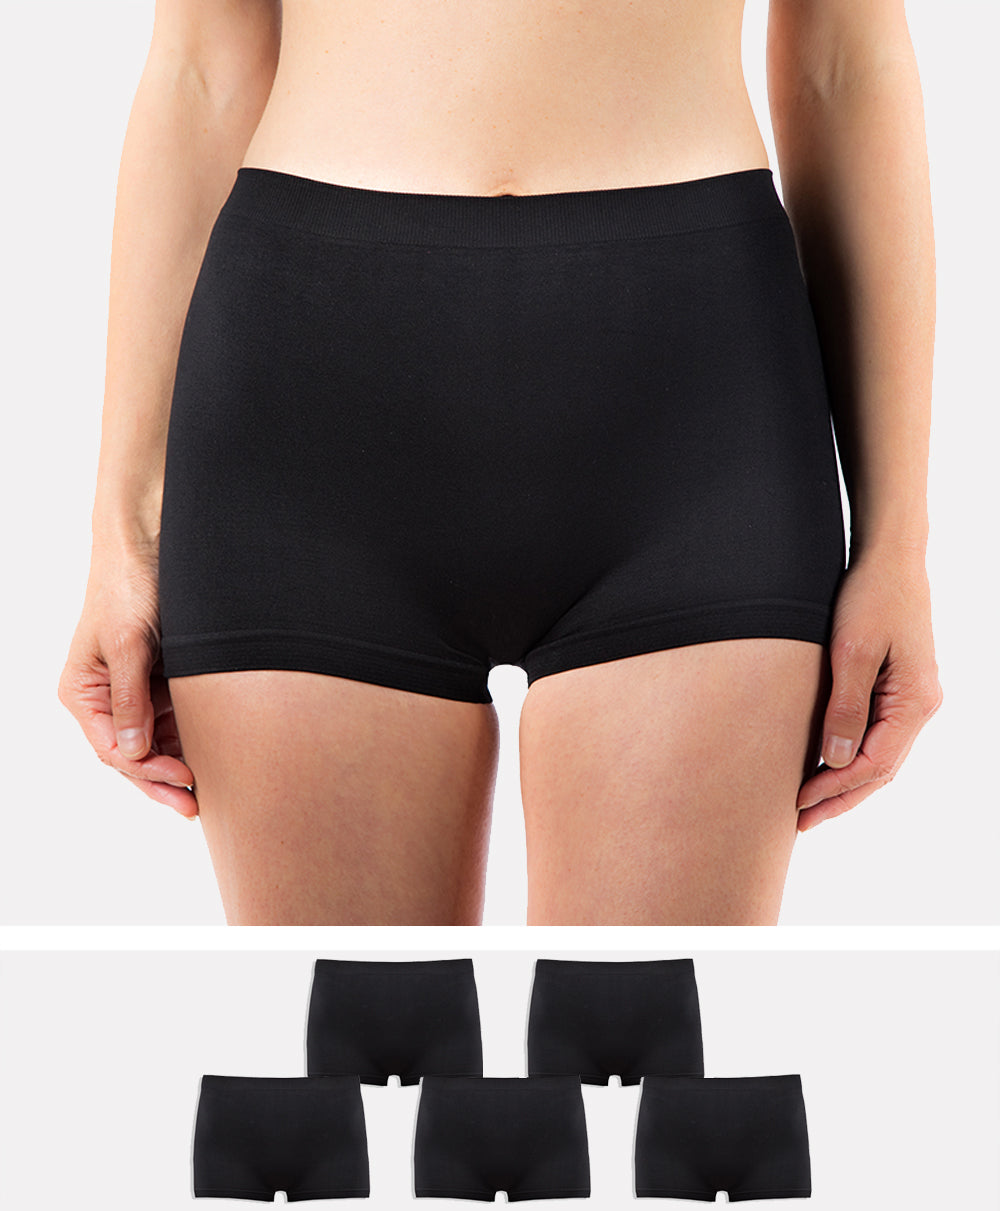 LALESTE Women Cotton Boxer Briefs 3 Inseam Boy Shorts Underwear Anti  Chafing Shorts 5 Pack